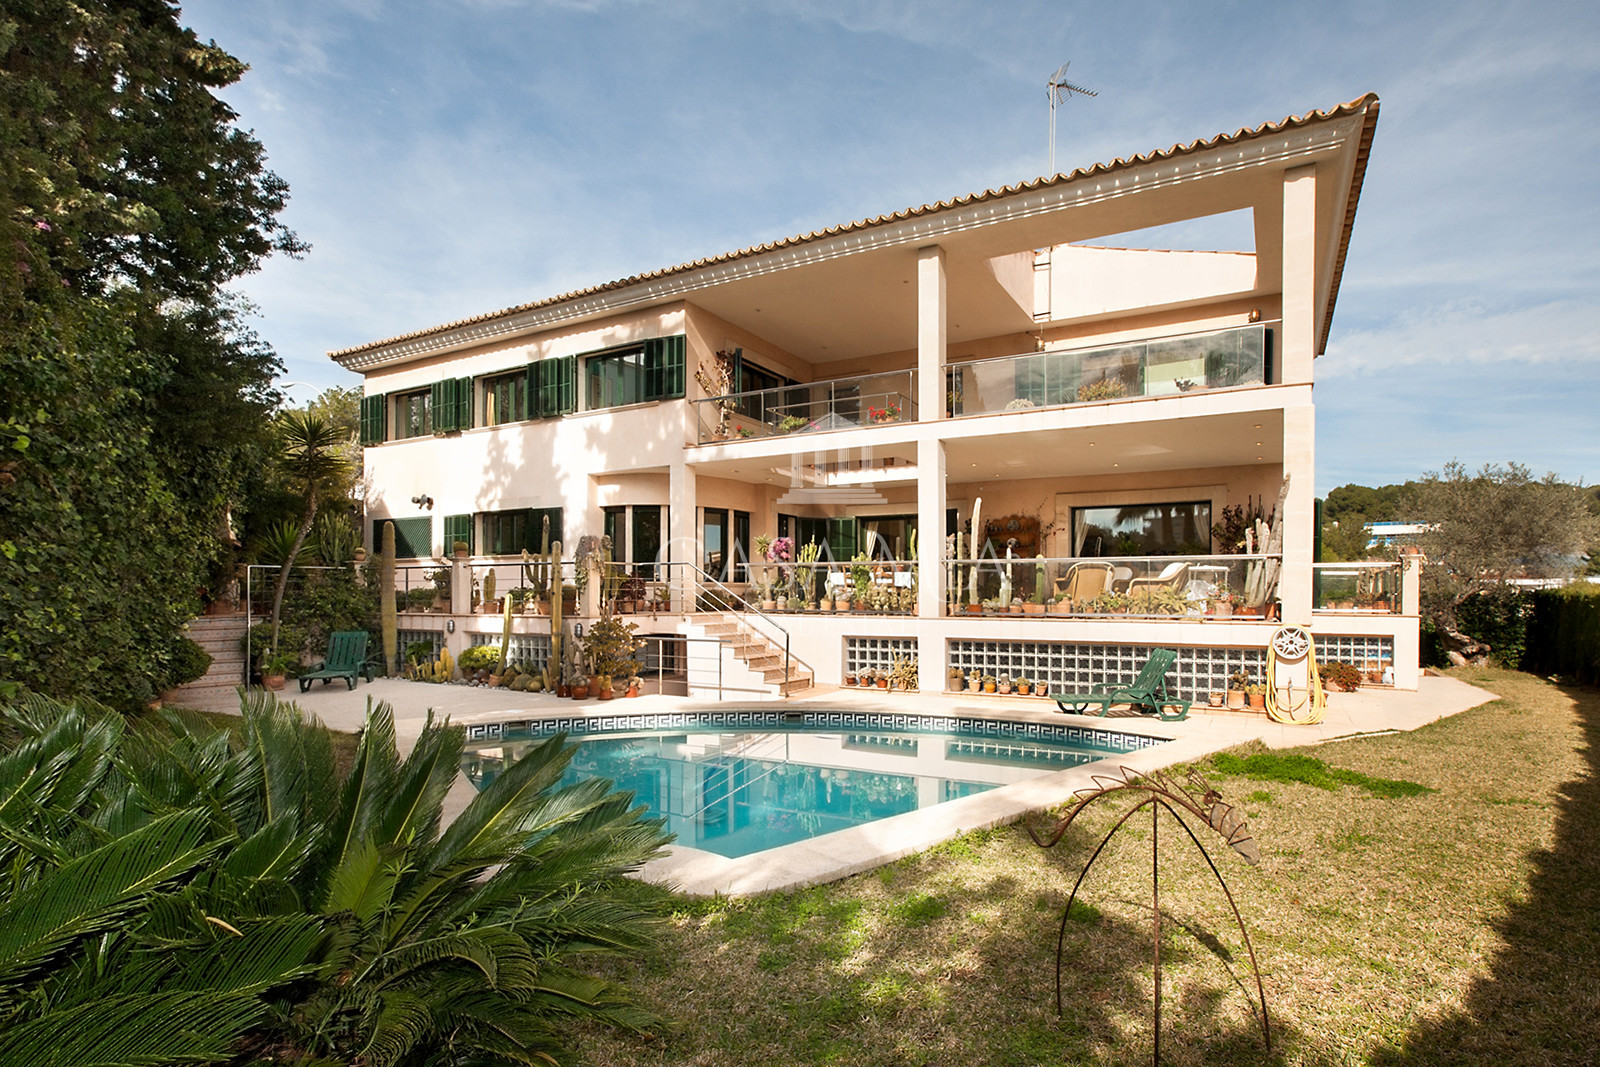 Mediterráneo, gran villa sobre Palma con piscina y vistas lejanas al mar, Son Dureta